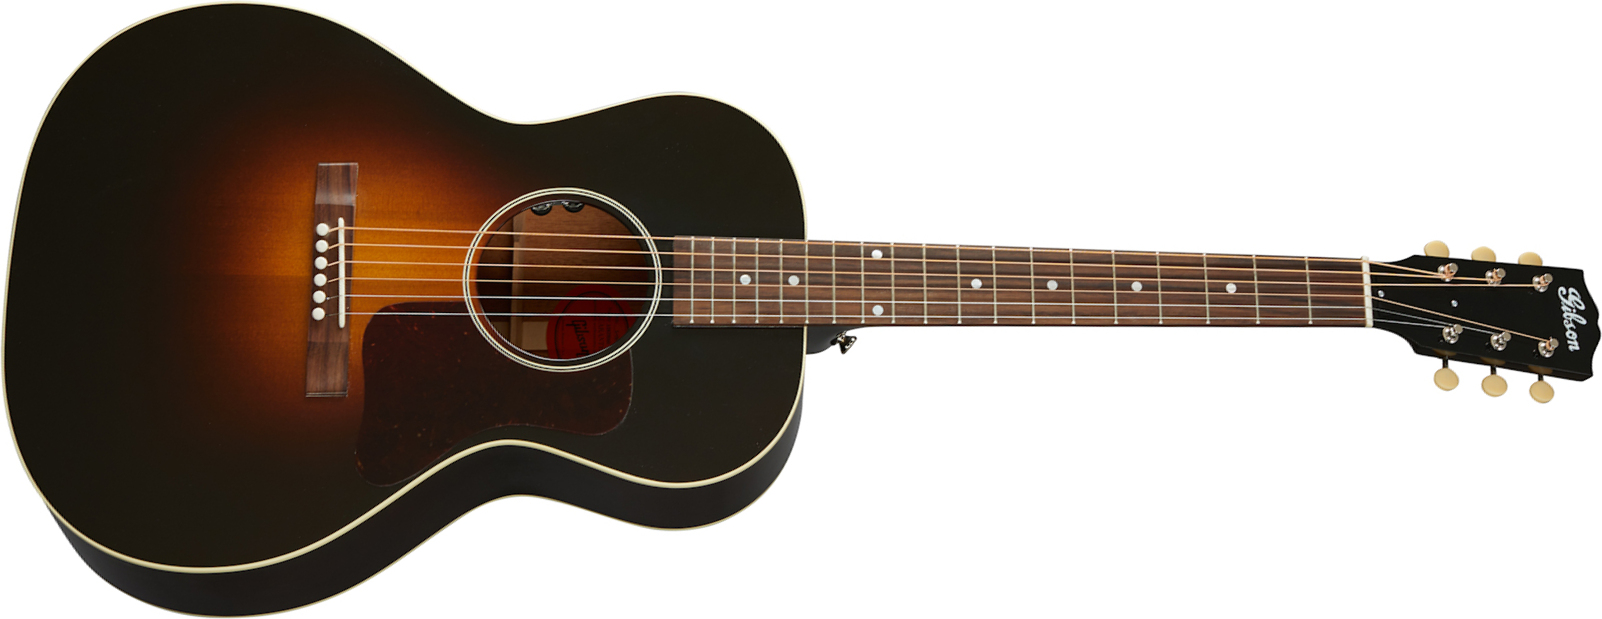 Gibson L-00 Original 2020 Parlor Epicea Acajou Rw - Vintage Sunburst - Electro acoustic guitar - Main picture